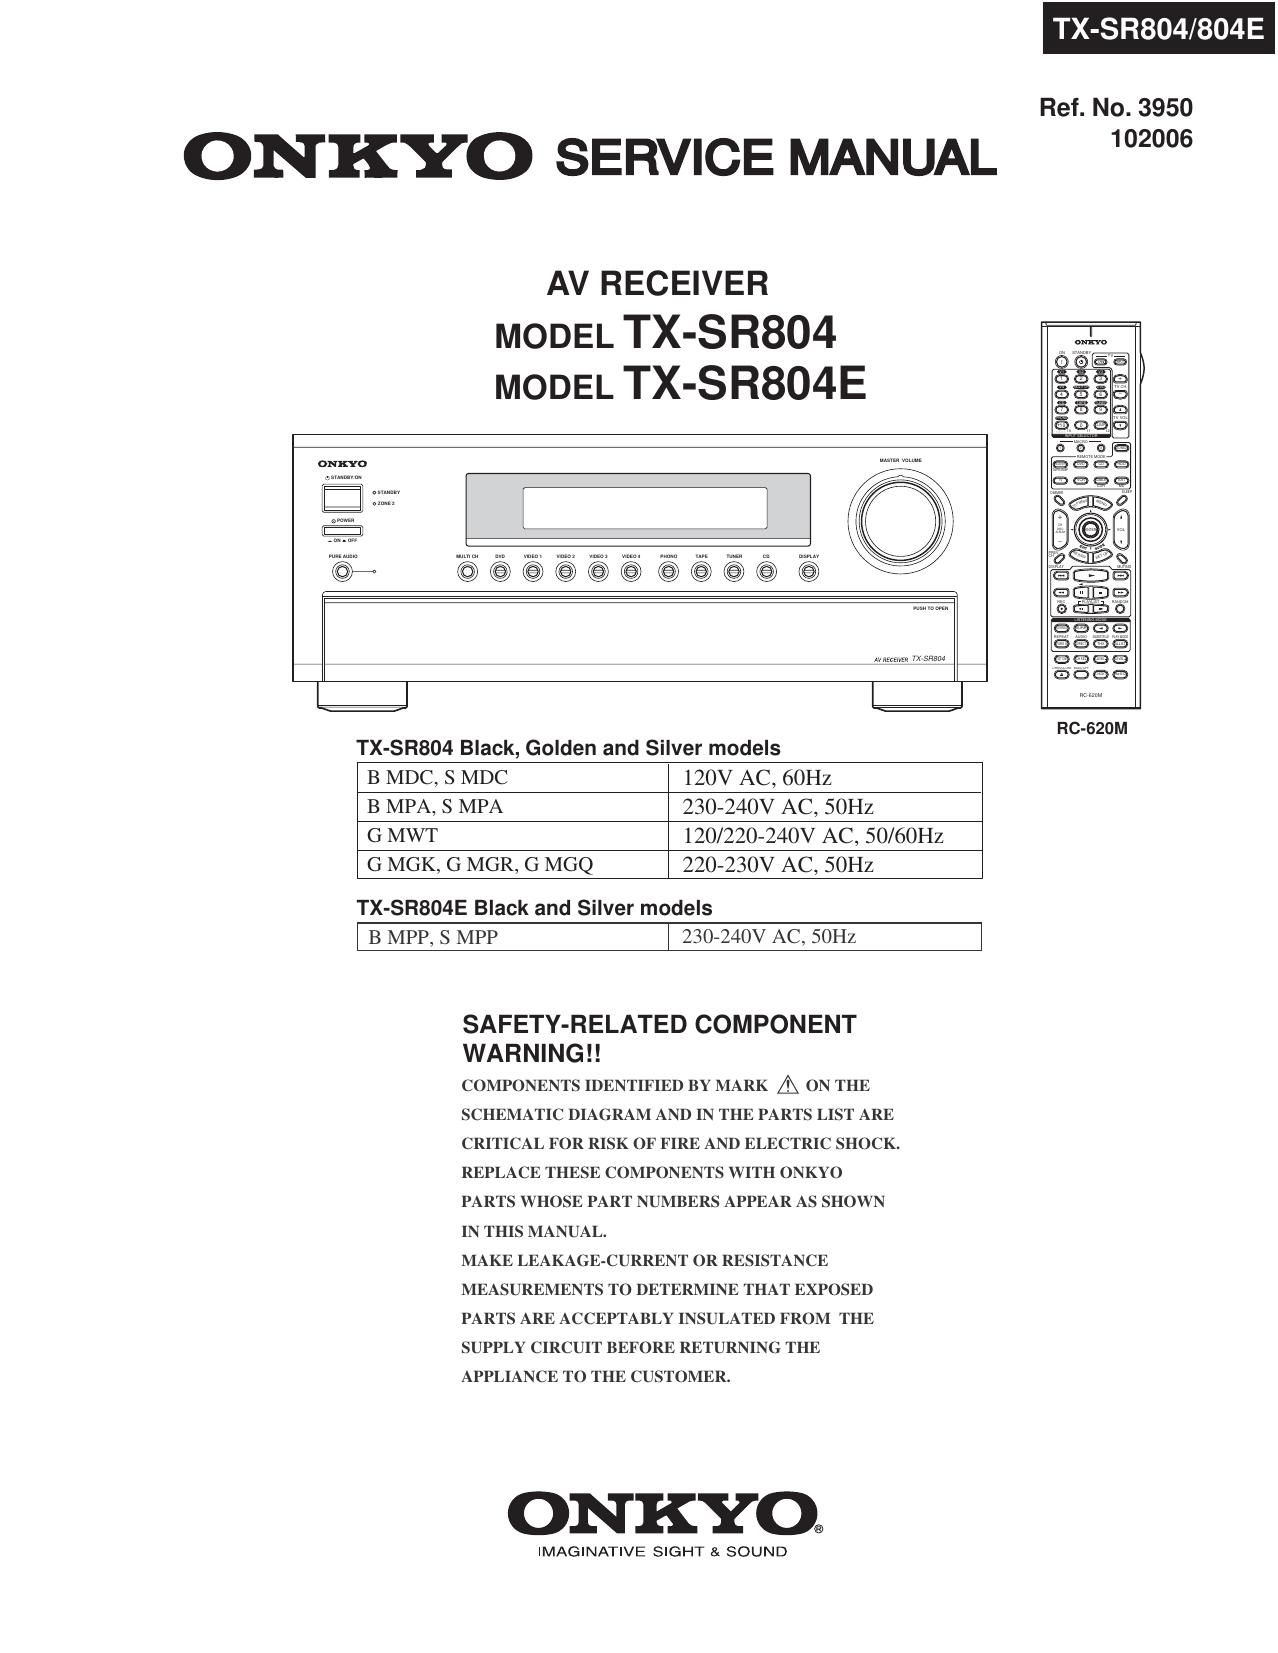 Onkyo TXSR 804 Service Manual